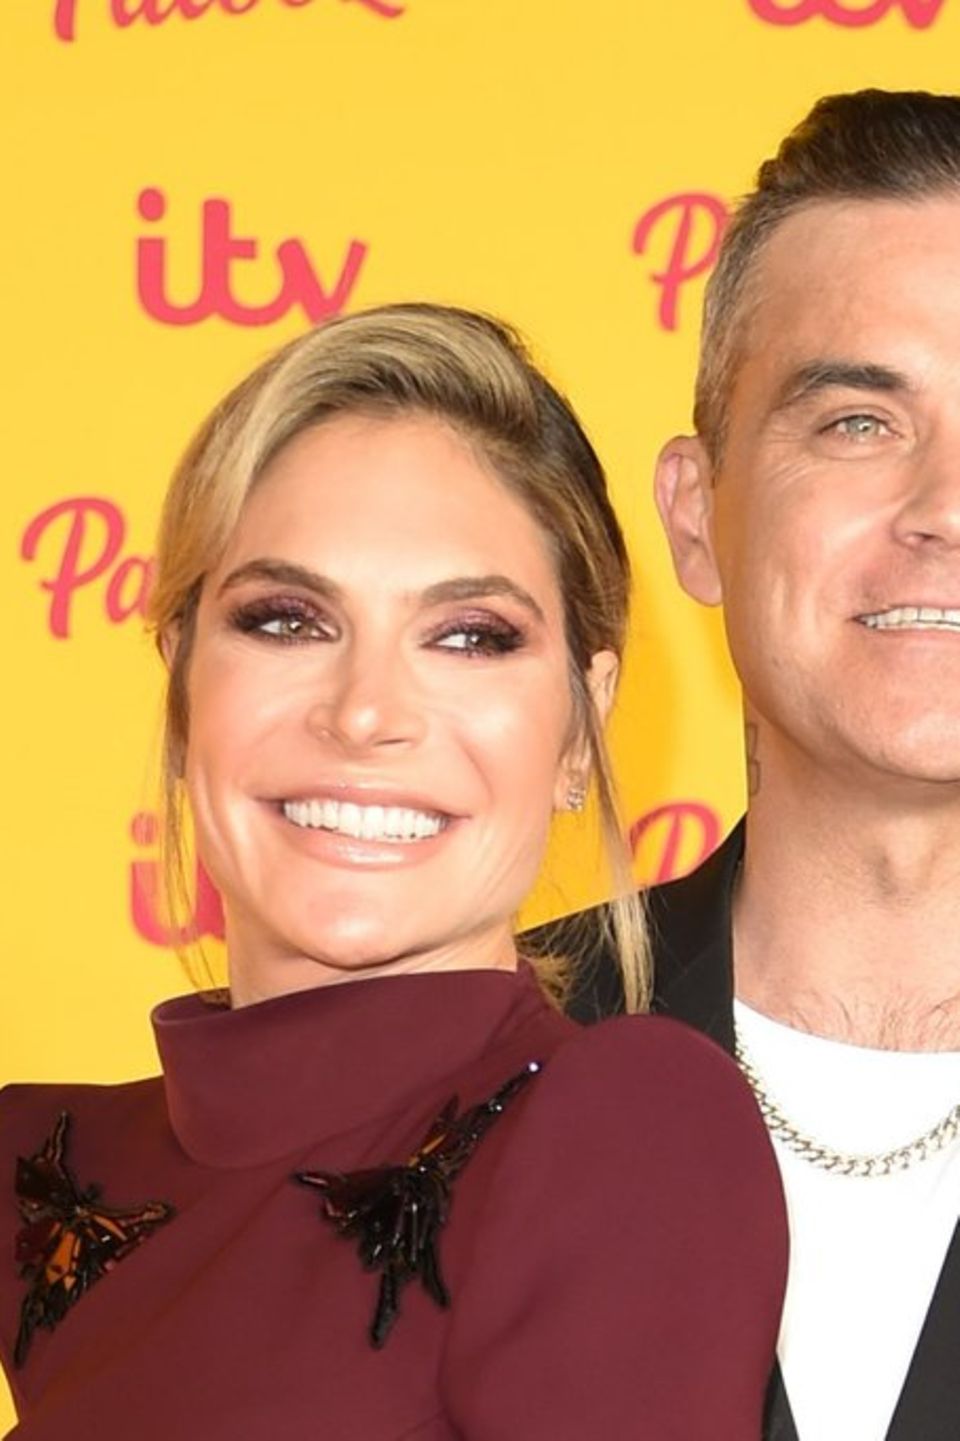 Robbie Williams und Ayda Field sind seit 2010 verheiratet.